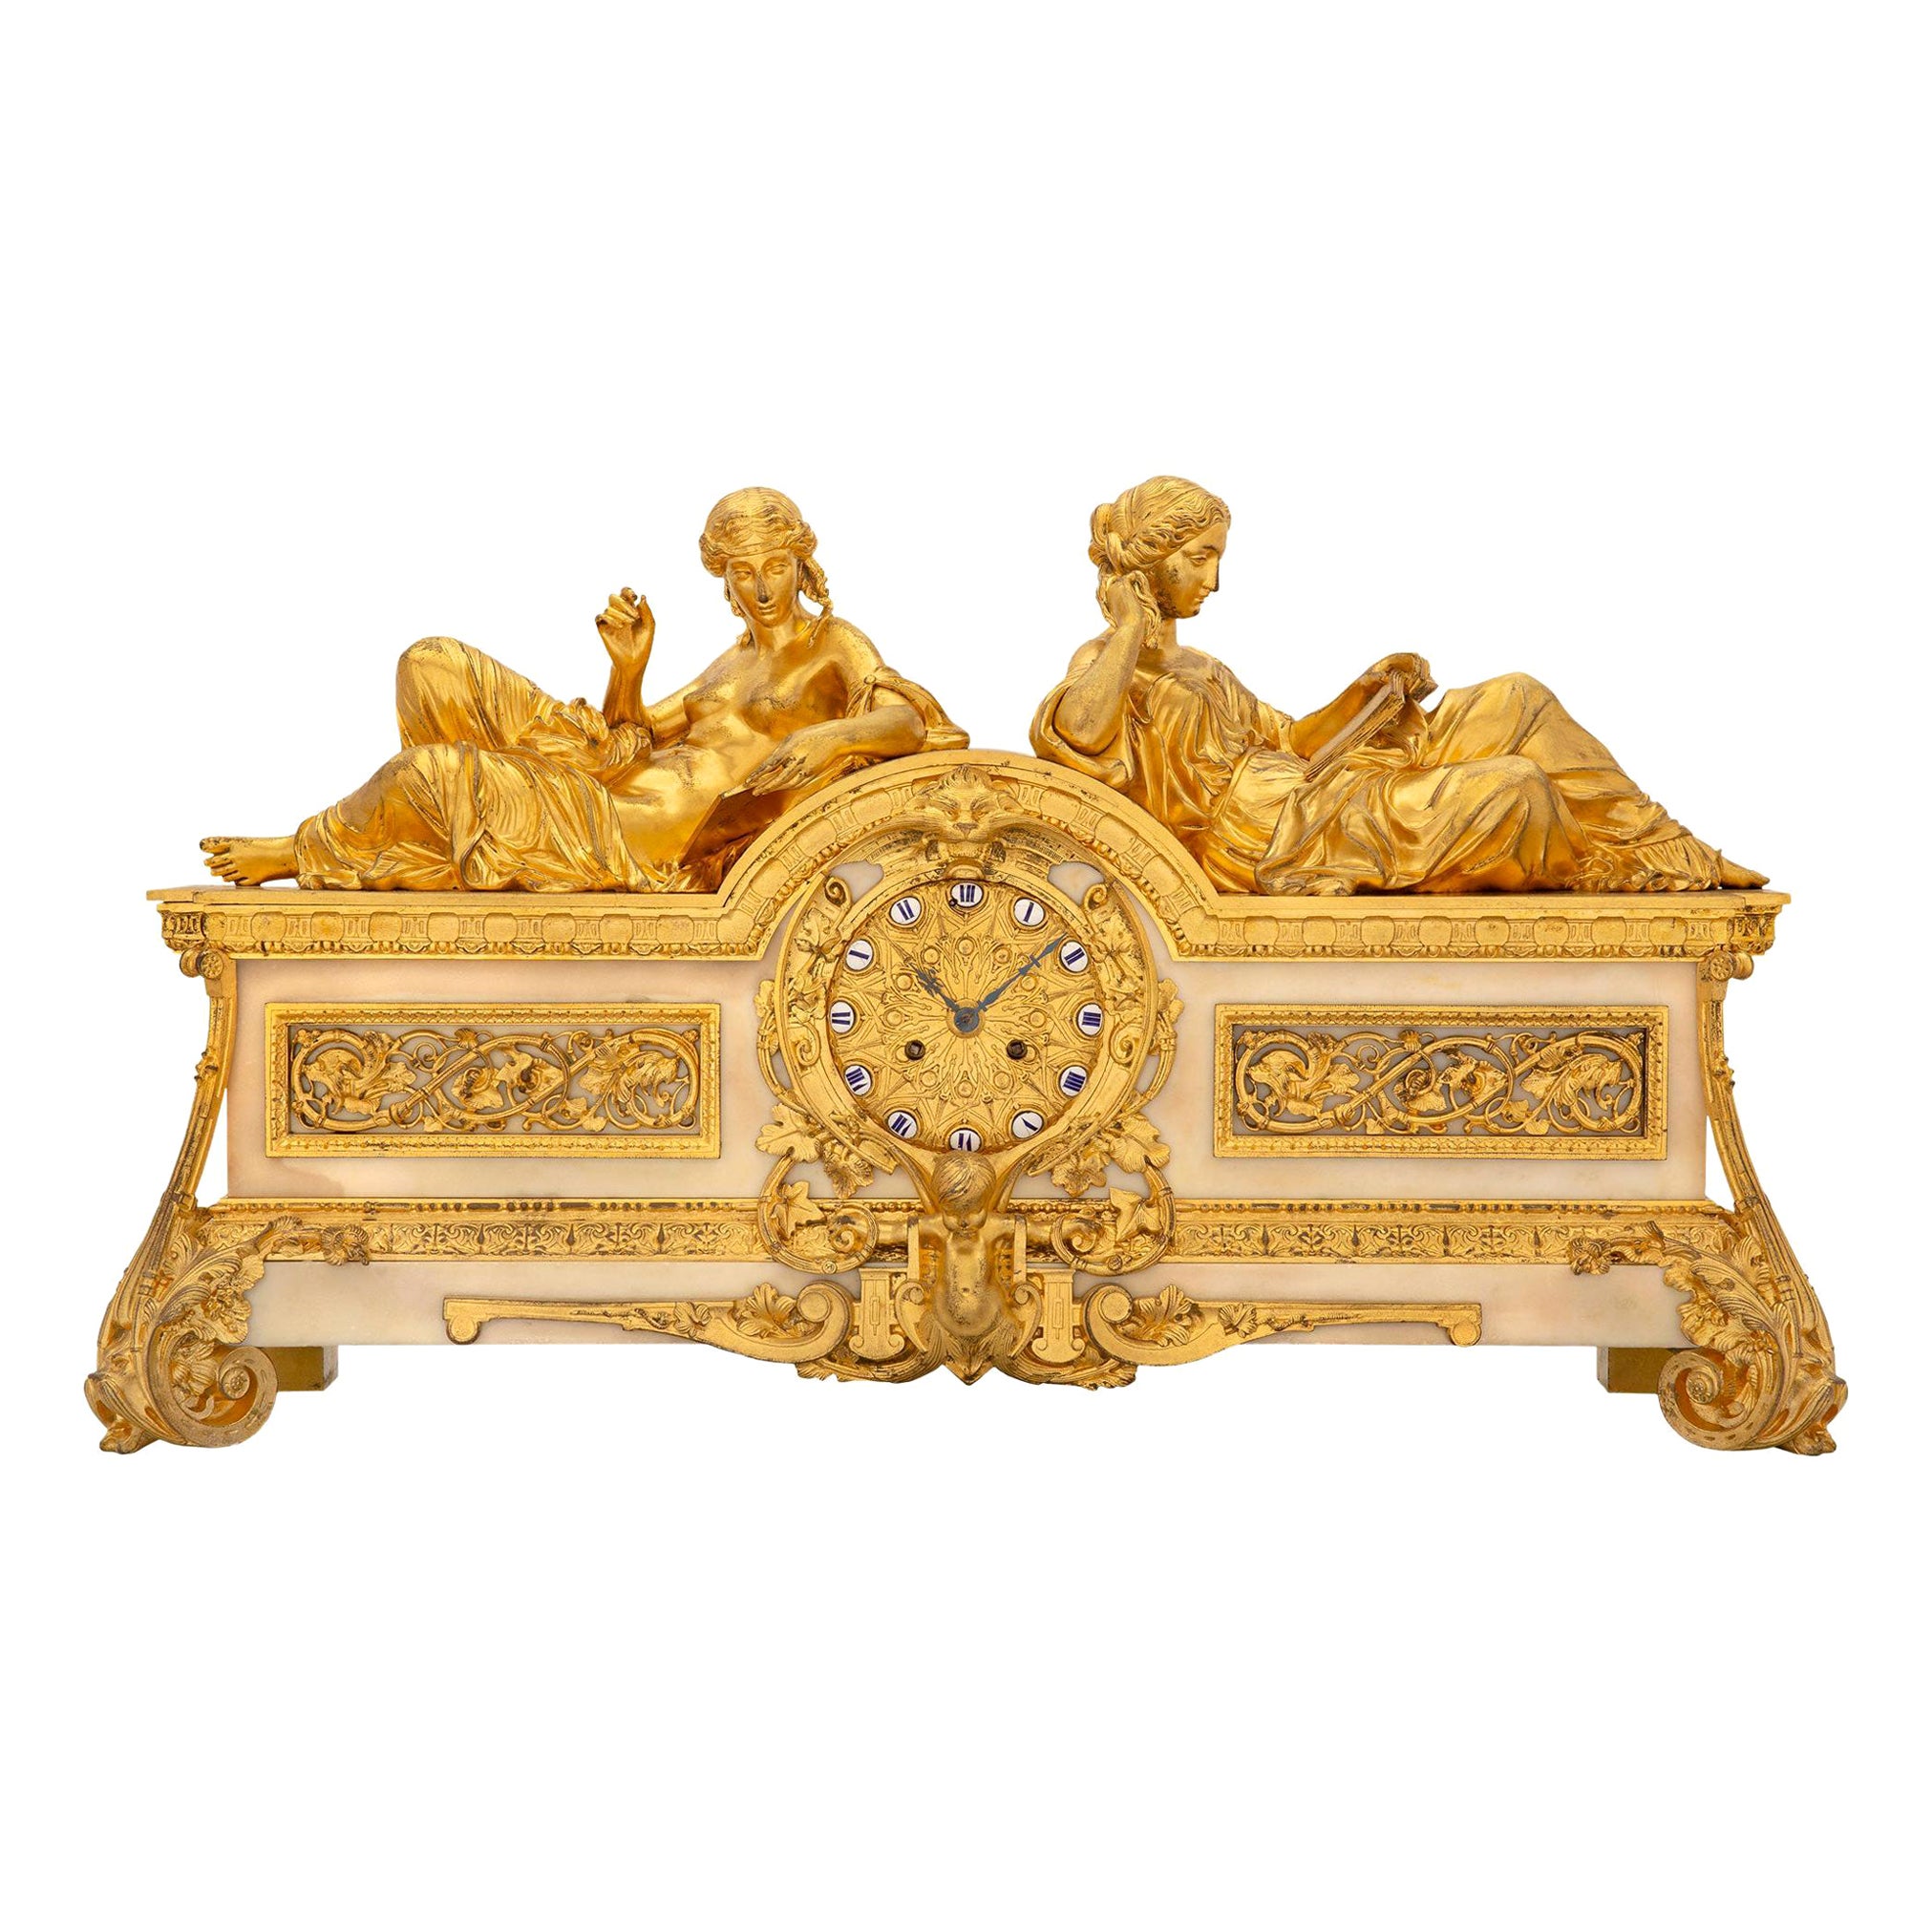 Französische Uhr aus Goldbronze und weißem Carrara-Marmor aus dem frühen 19. Jahrhundert